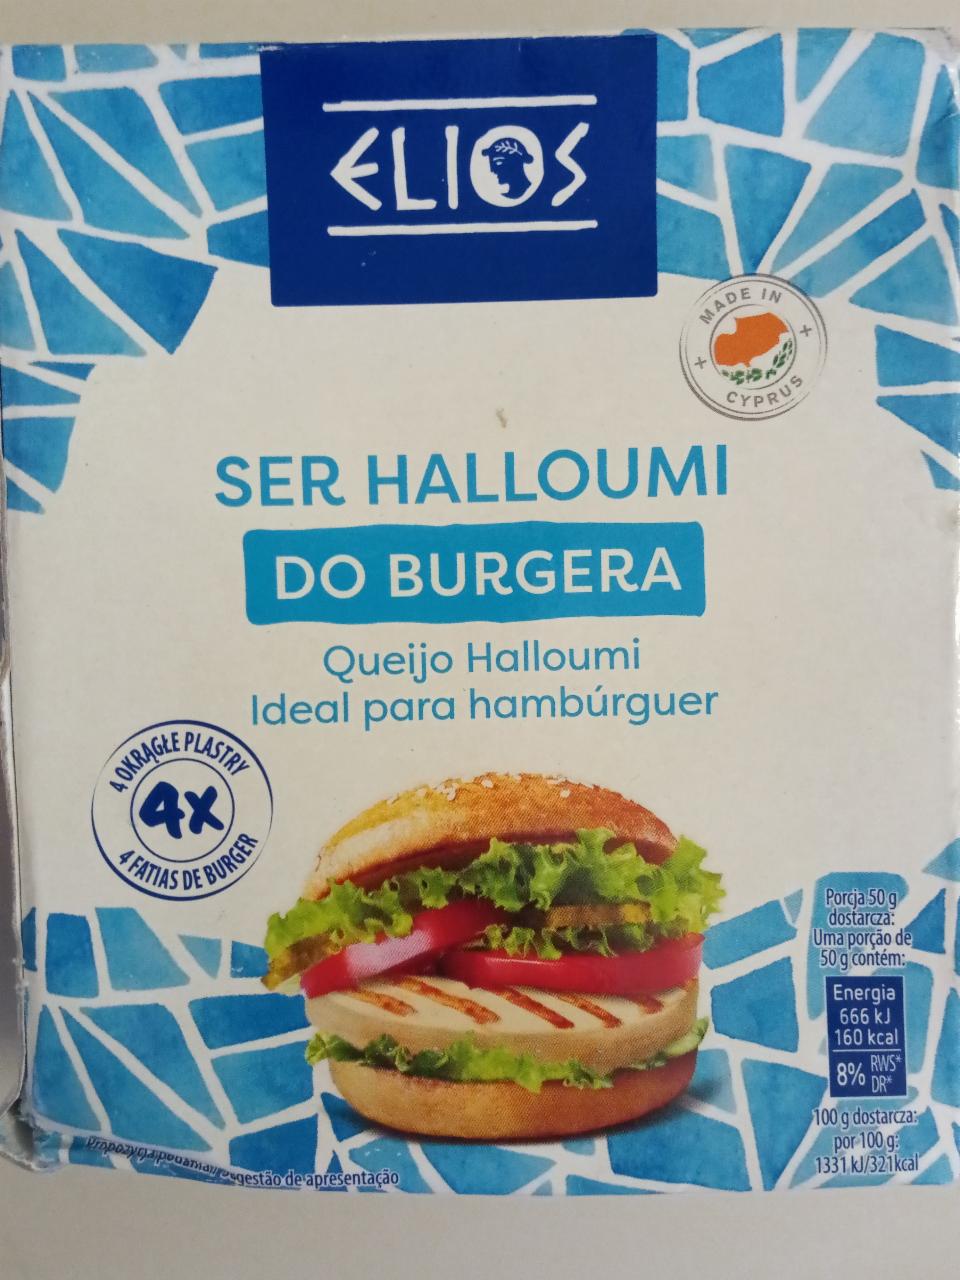 Fotografie - Ser halloumi do burgera Elios